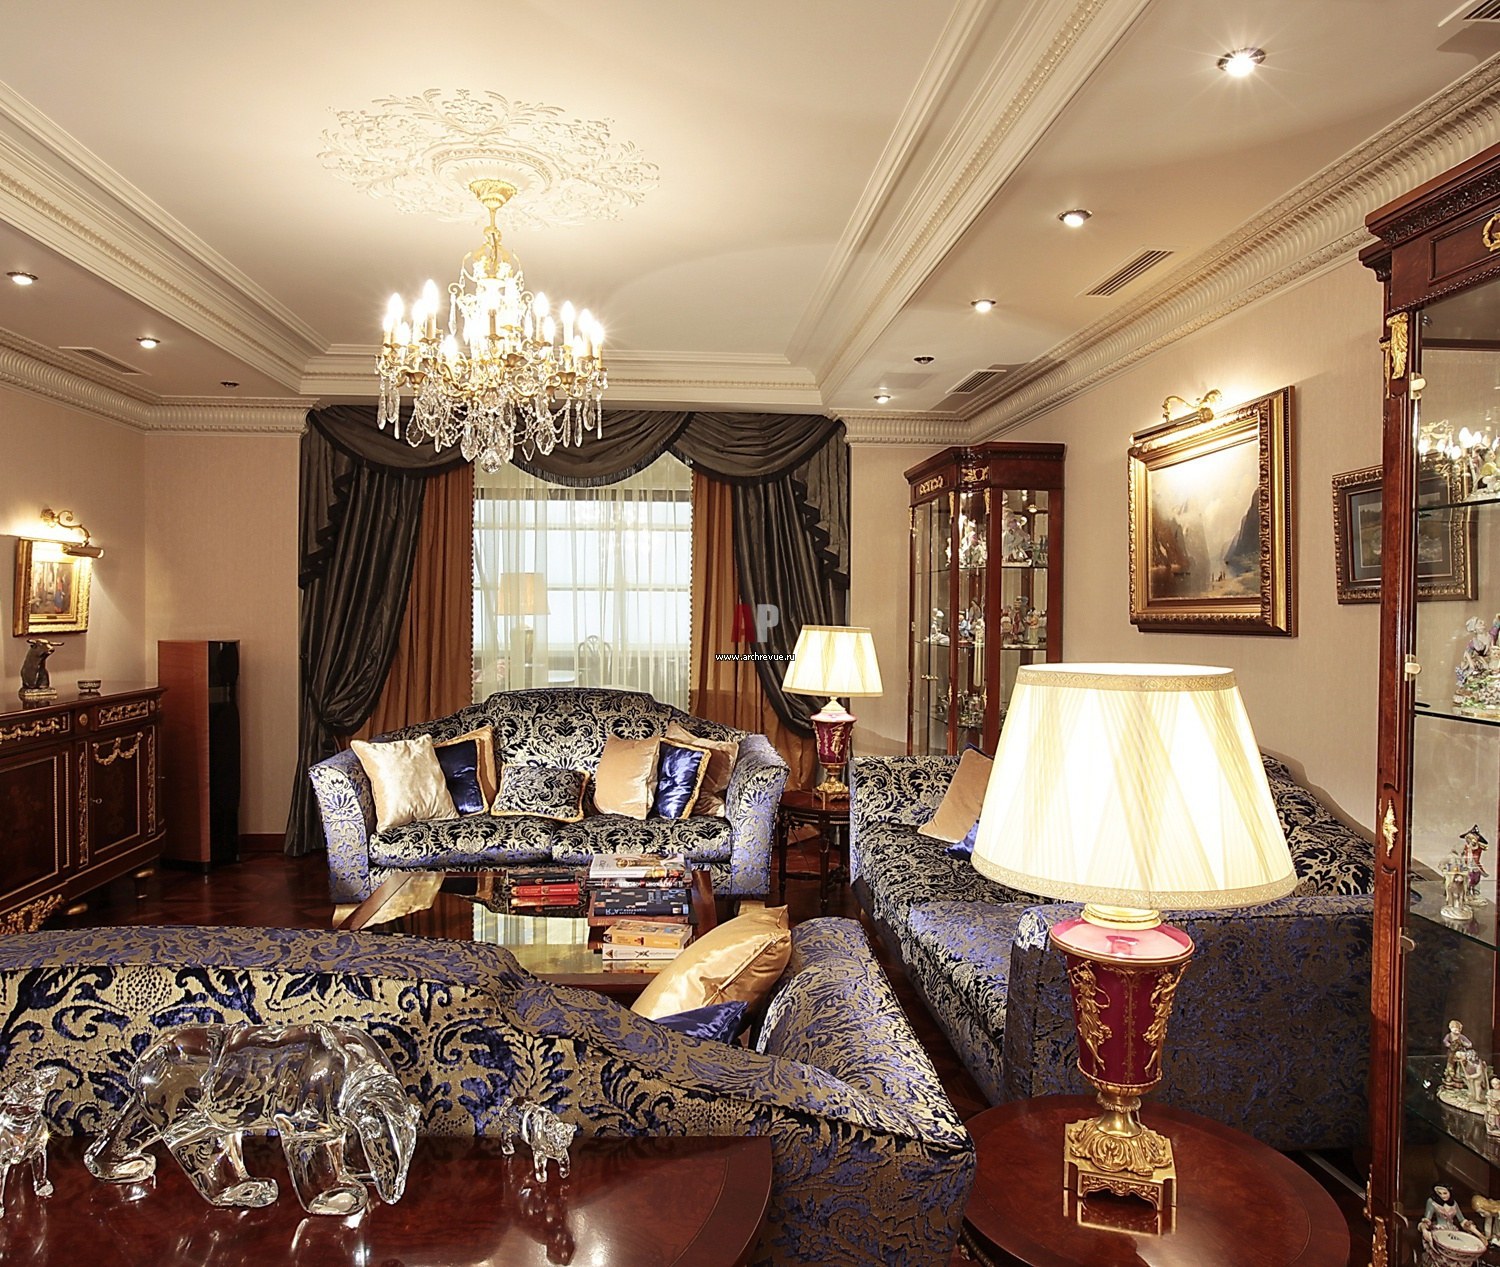 интерьер гостиной в классическом стиле с темной мебелью фото